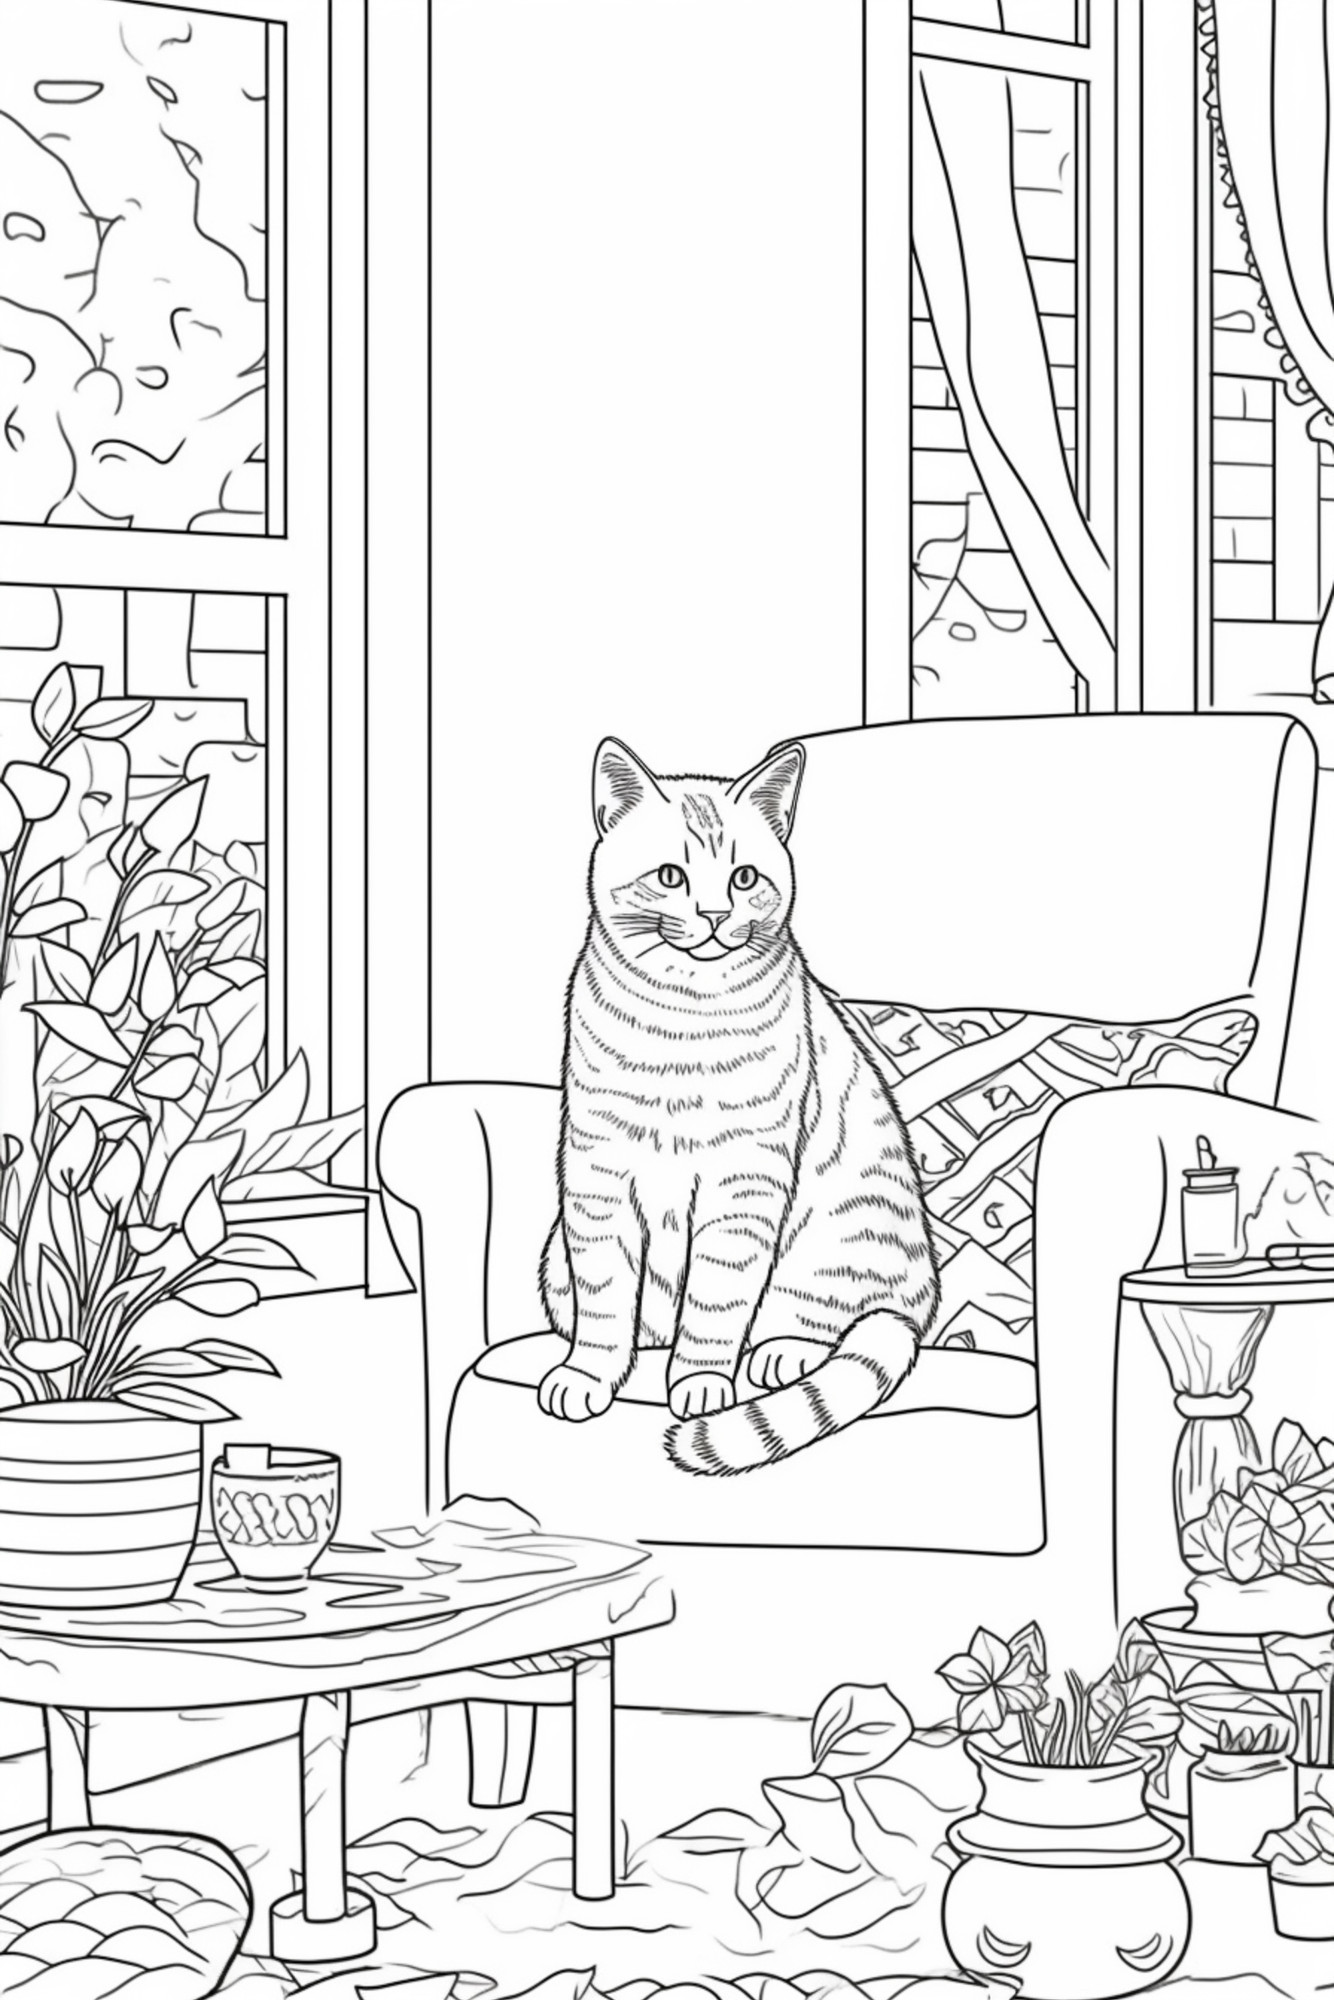 Раскраска для детей: кошка на кресле в комнате